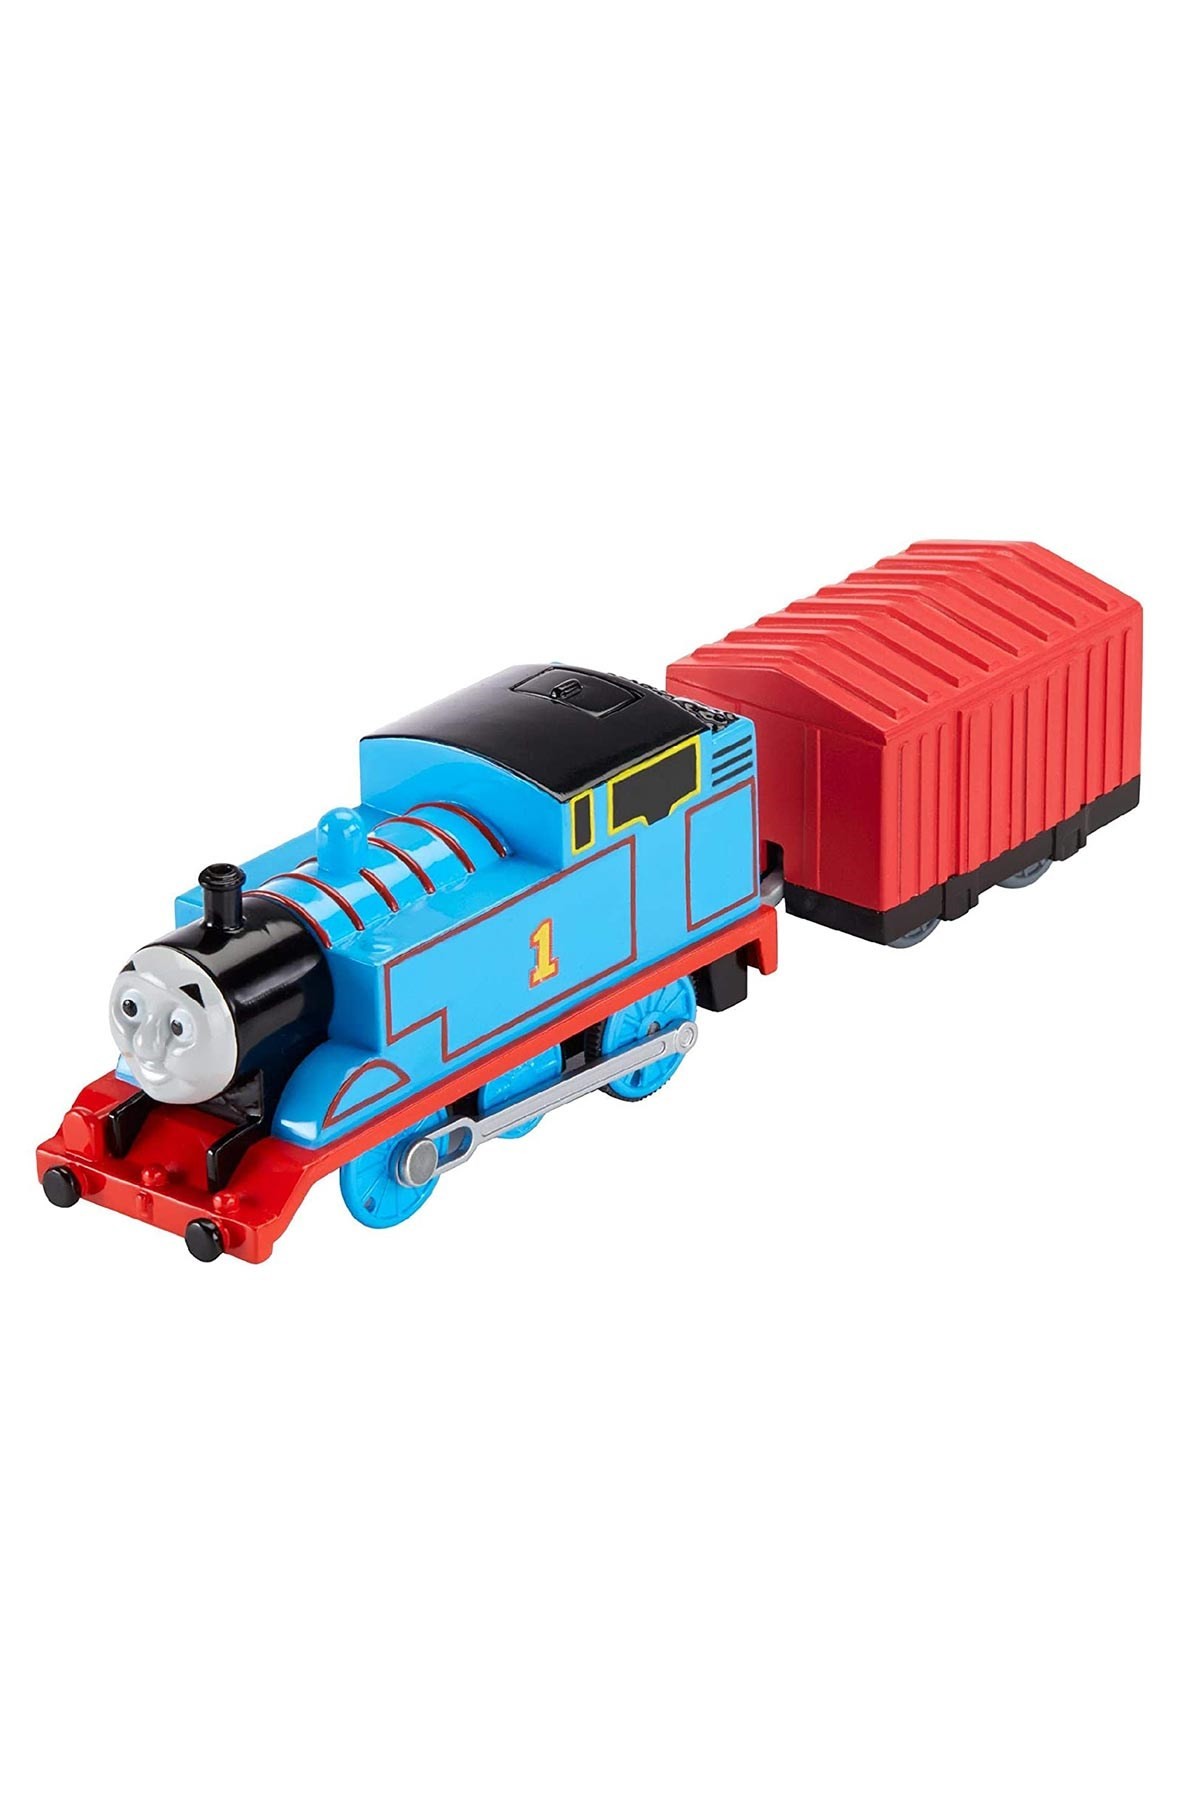 Thomas ve Arkadaşları Motorlu Tren Thomas BML06